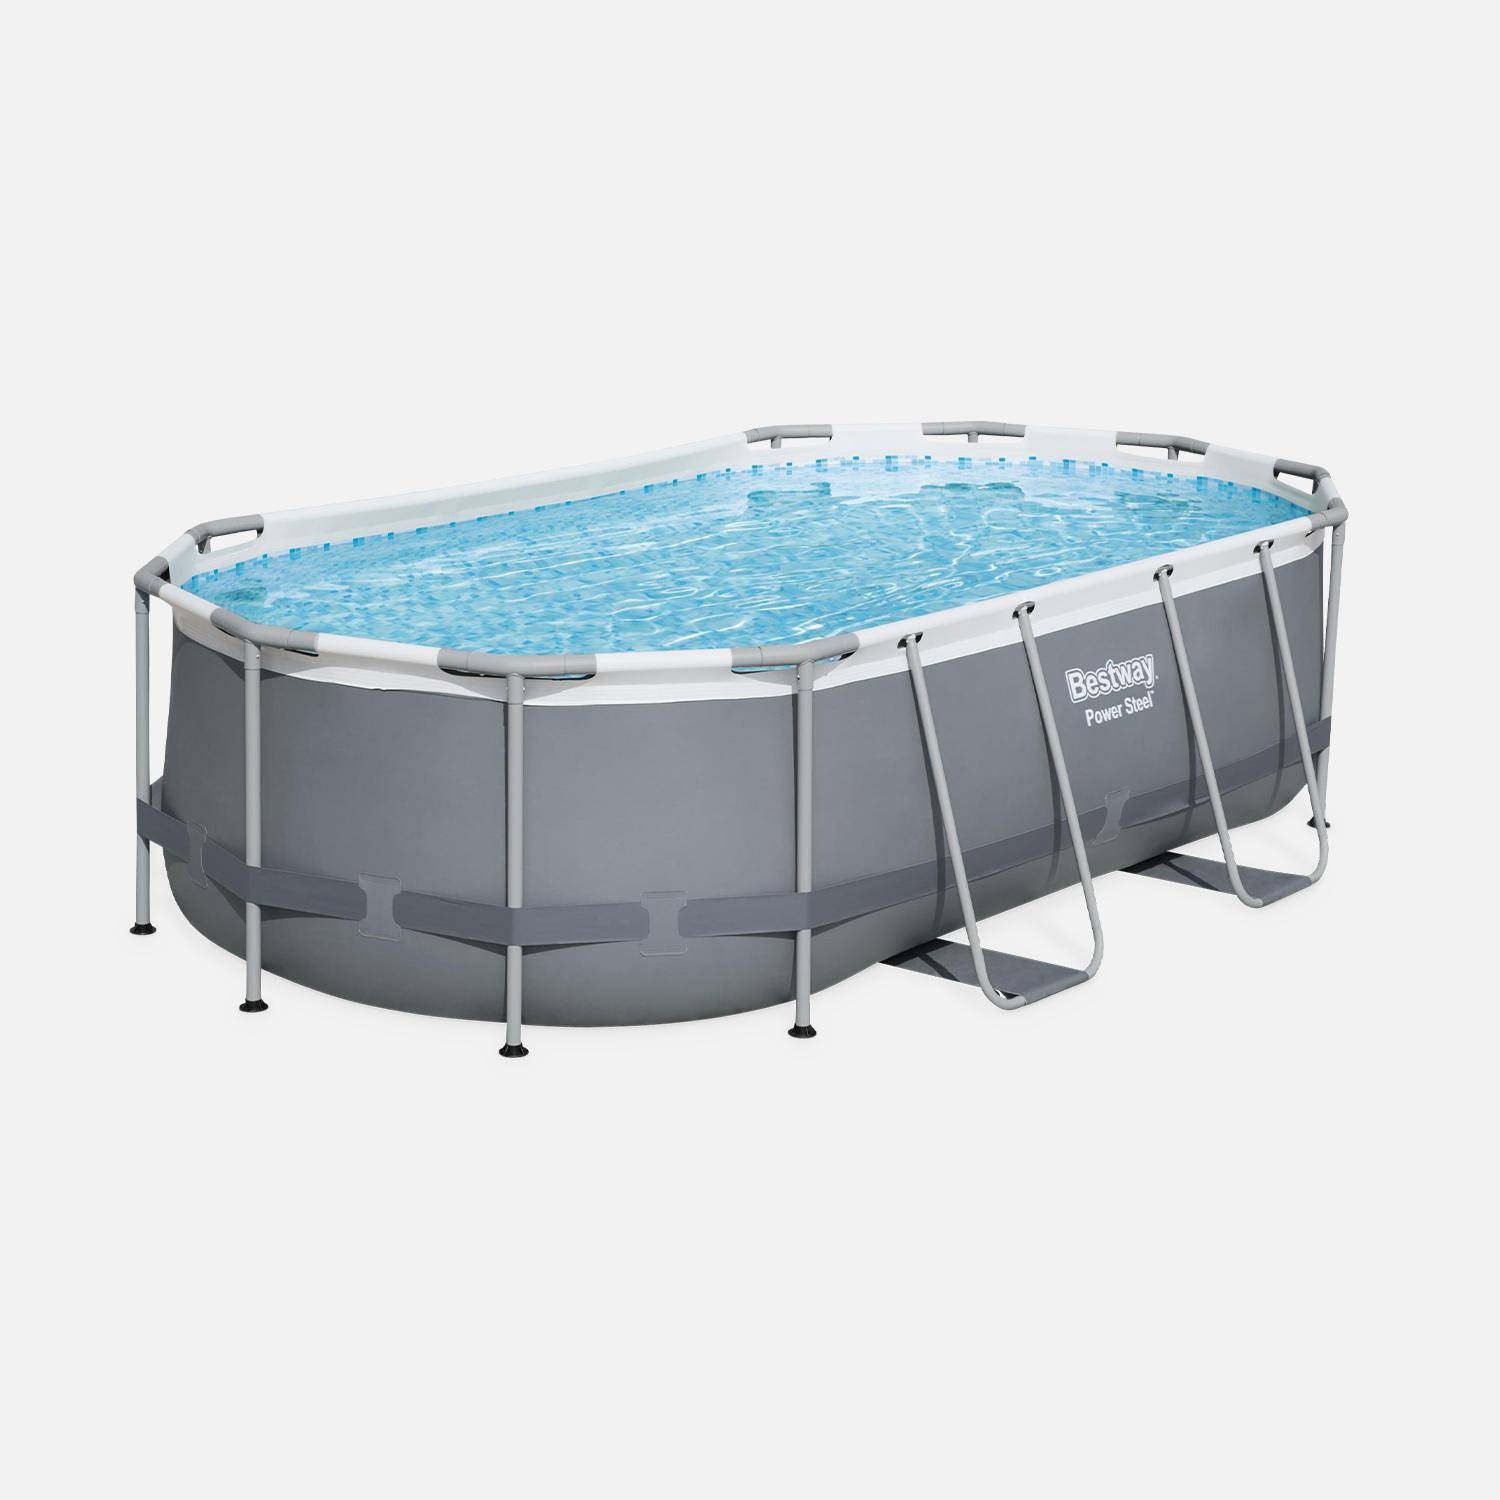 Kit piscine complet BESTWAY – Spinelle grise – piscine ovale tubulaire 4x2 m, pompe de filtration, échelle et kit de réparation inclus  Photo3